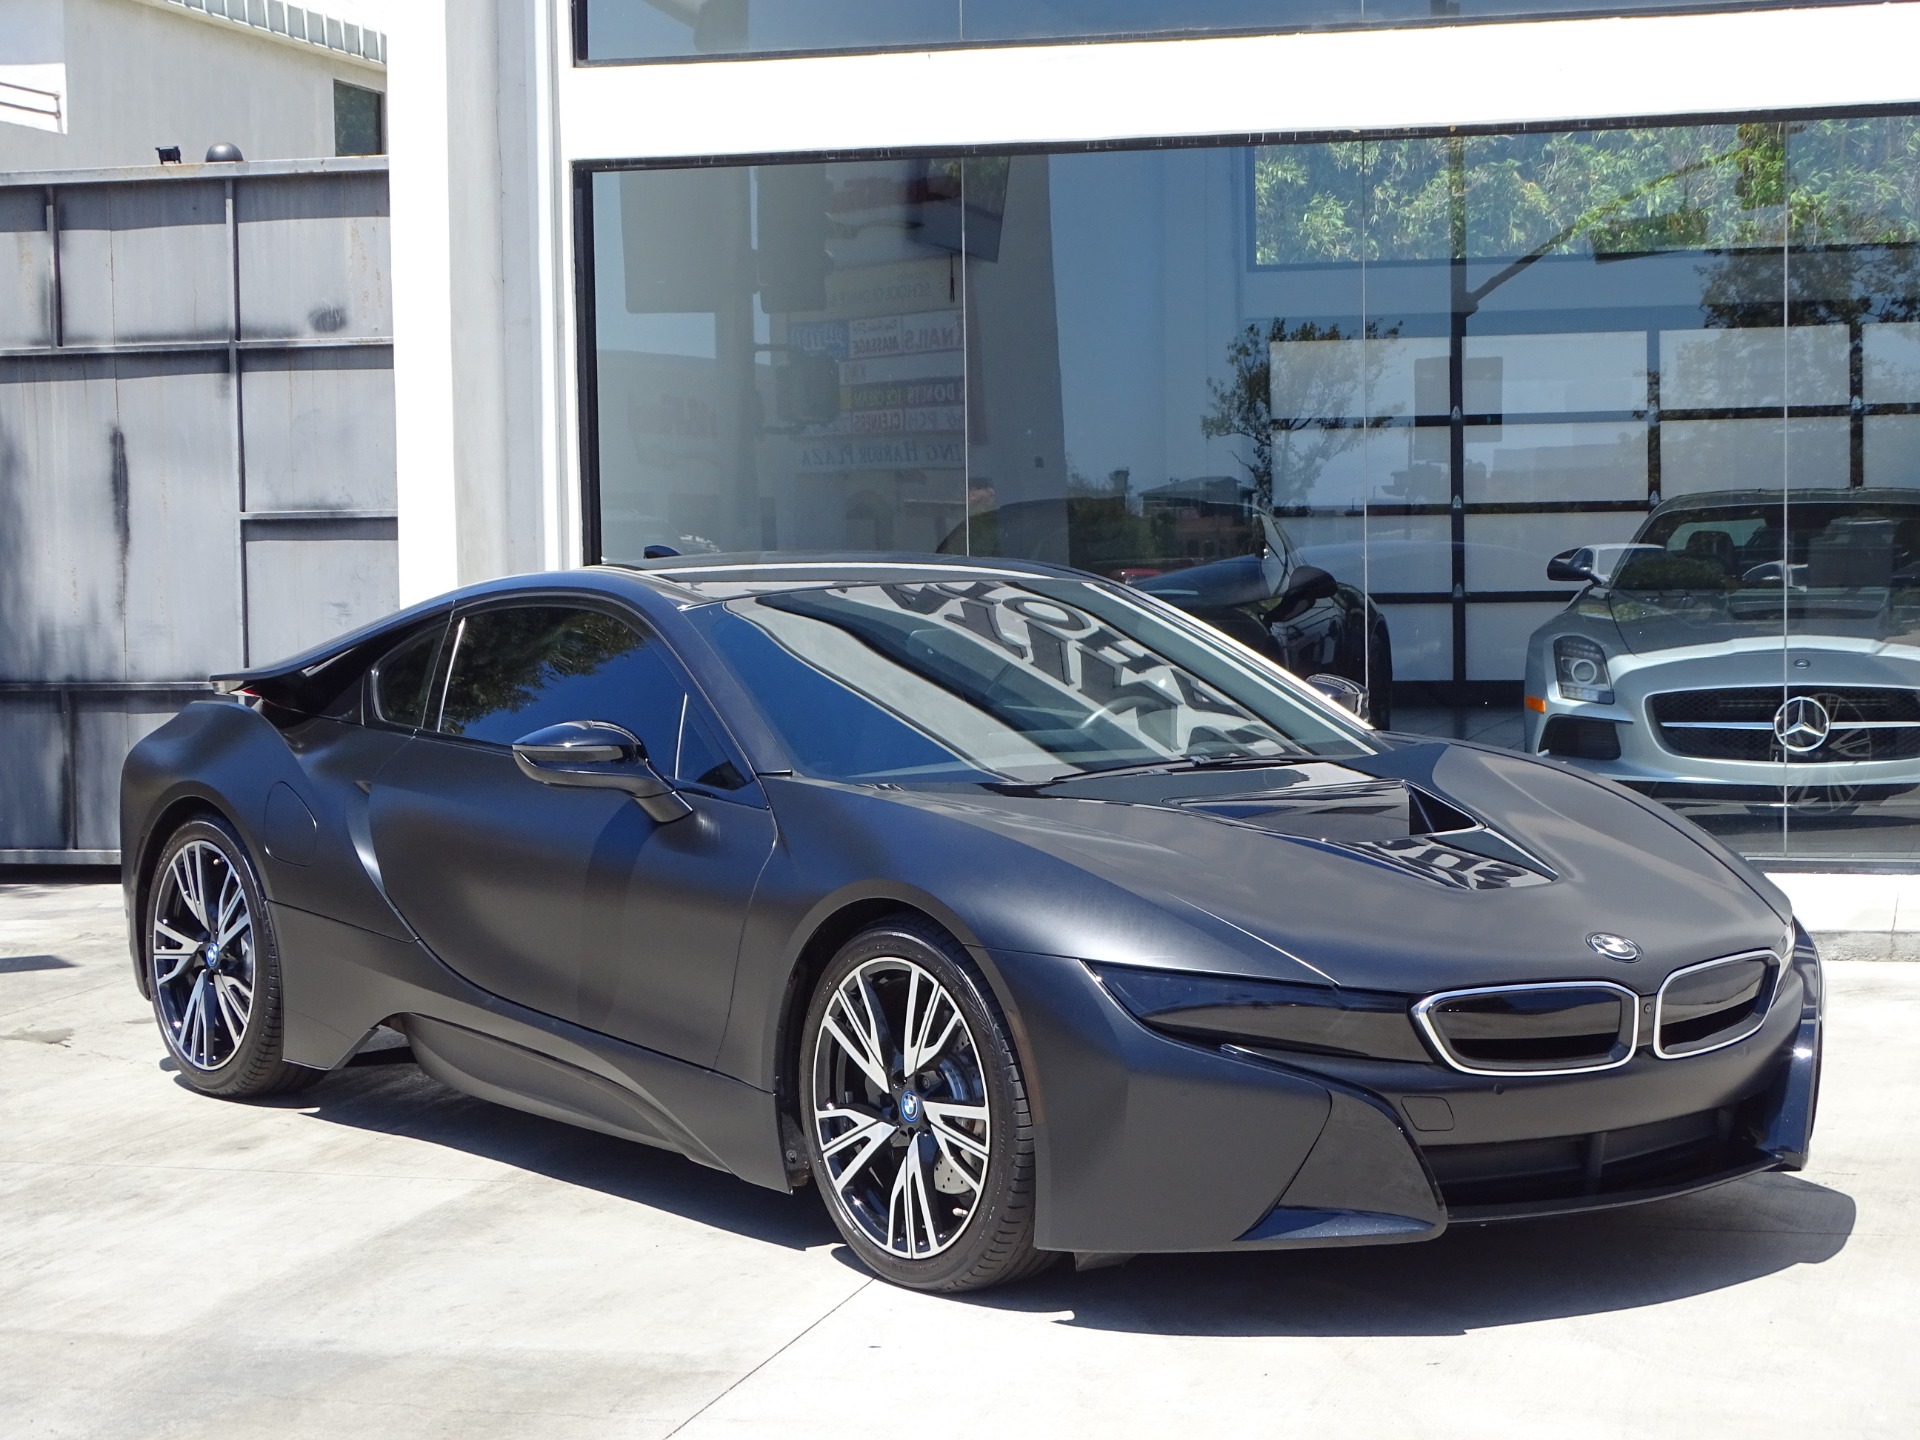 2014 BMW i8 Stock # 7015 for sale near Redondo Beach, CA